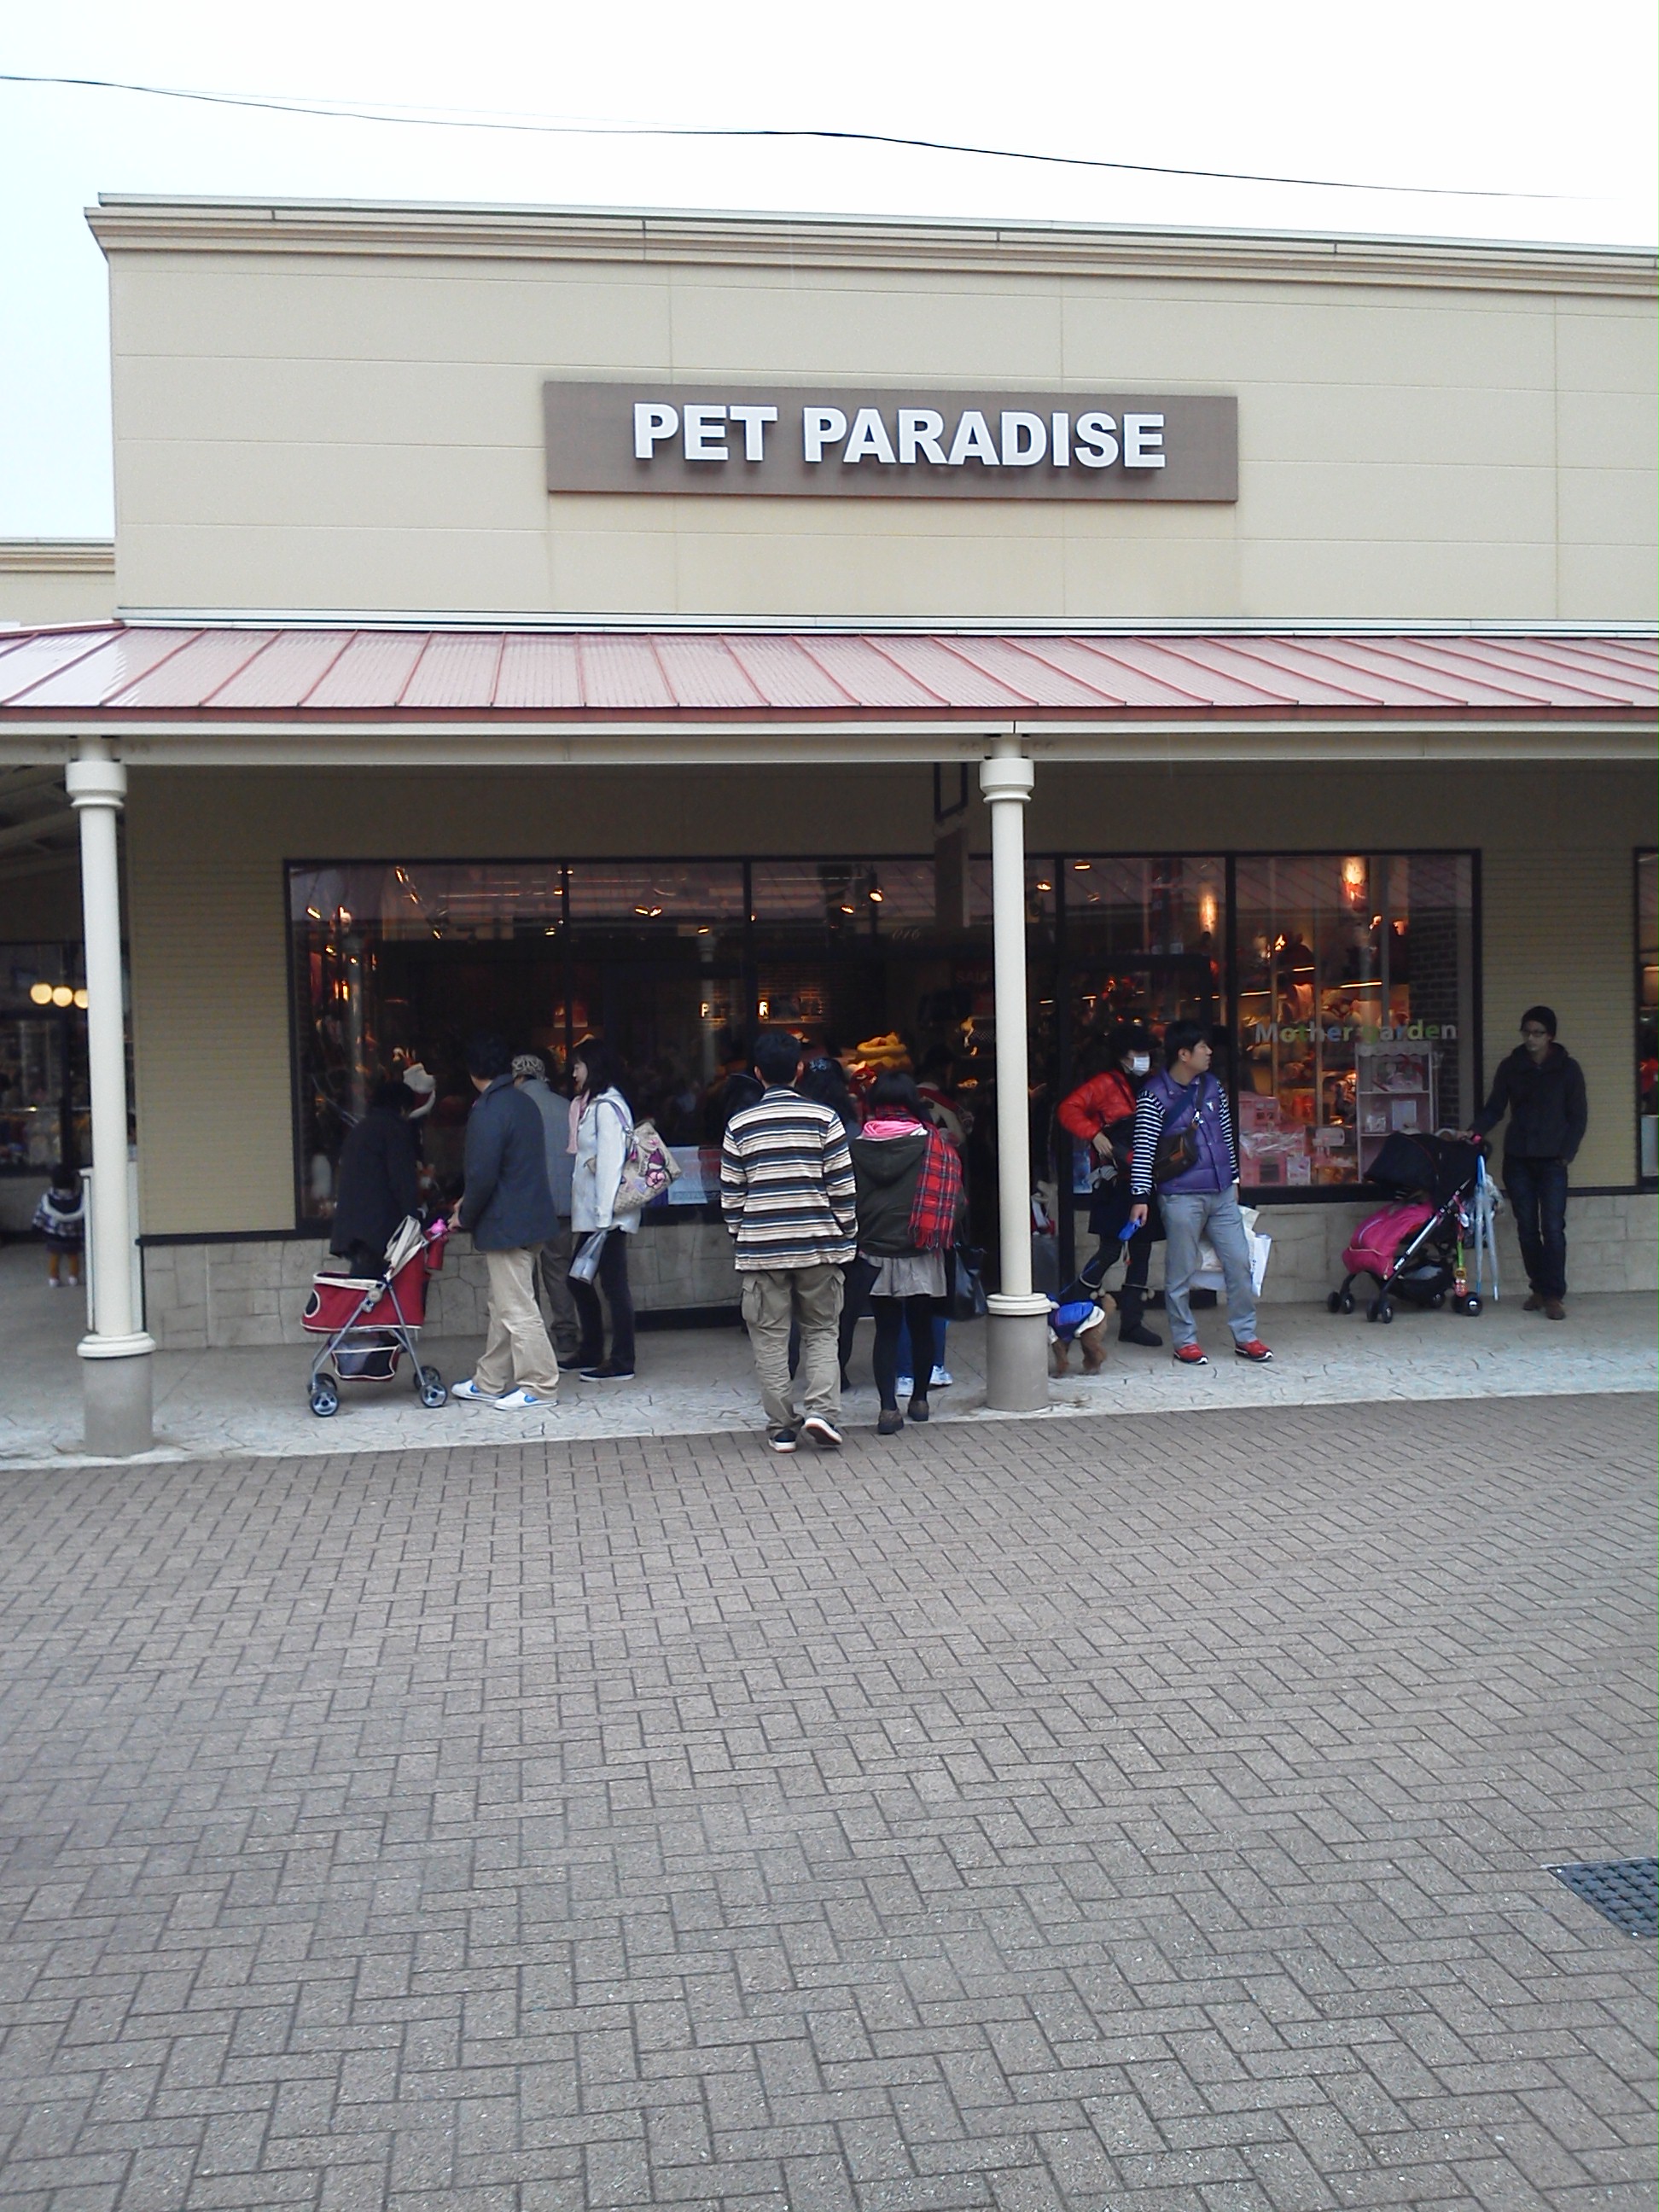 ペットパラダイス<br />(PET PARADISE) 那須ガーデンアウトレットの店舗